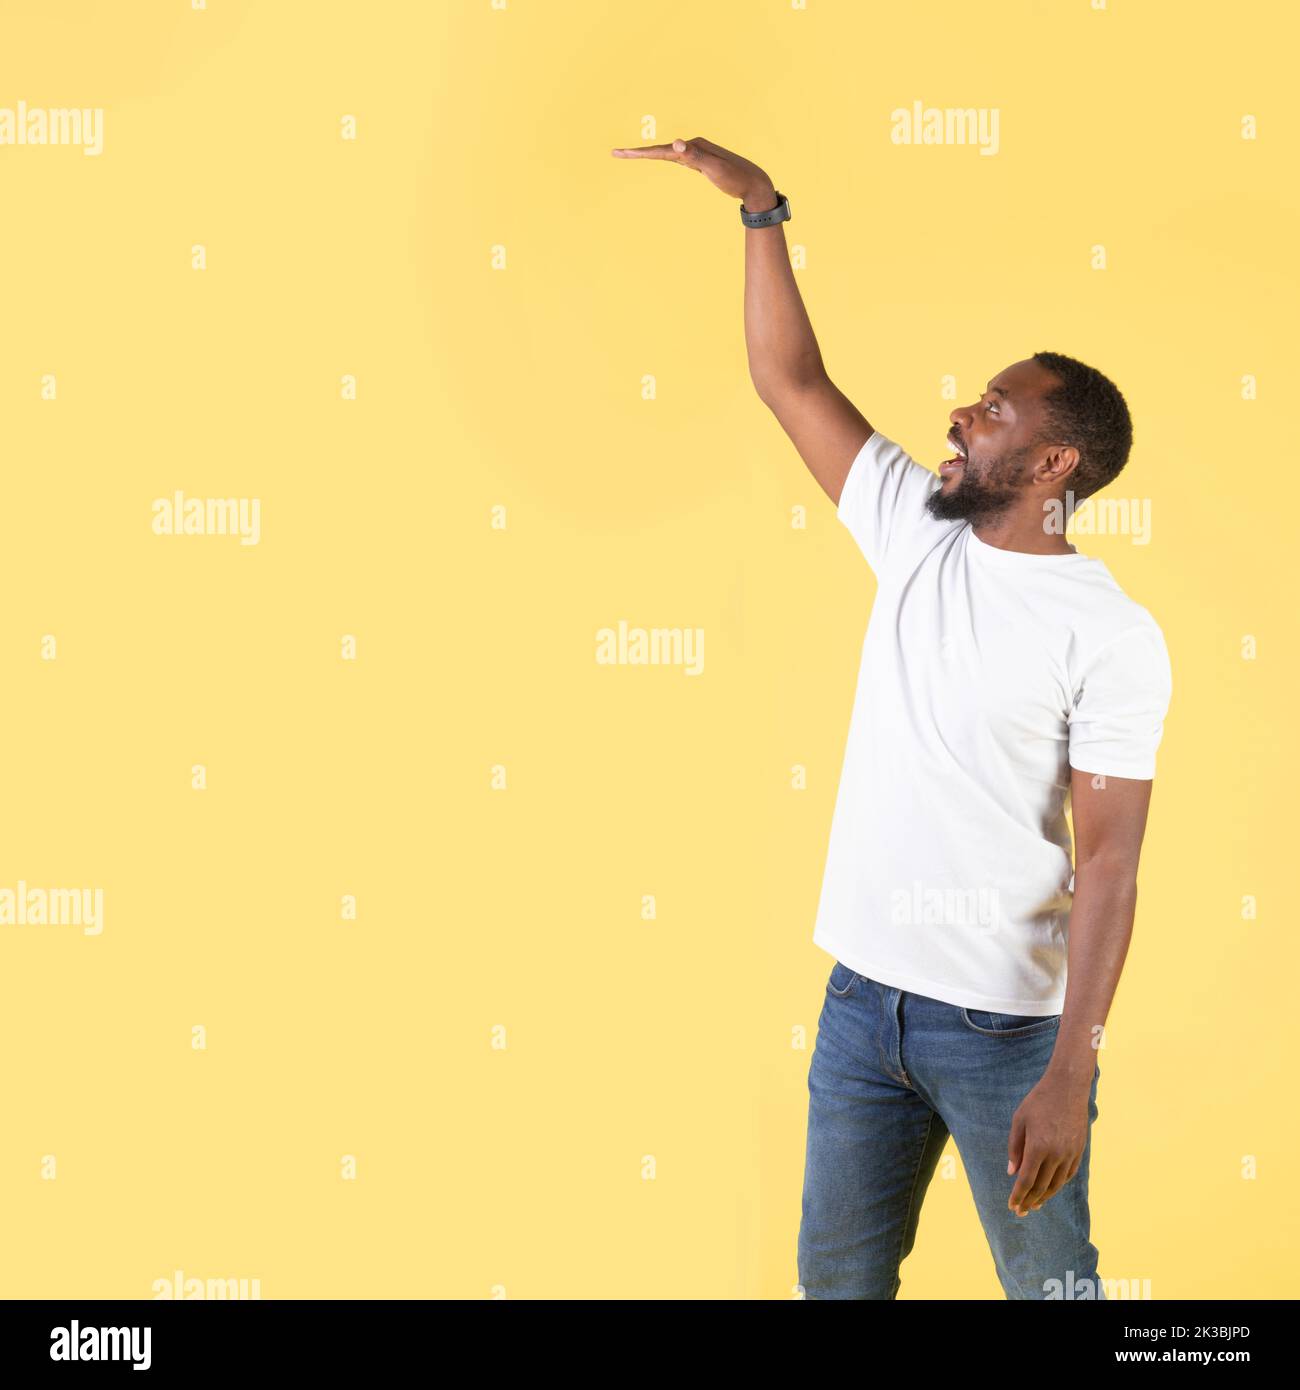 Uomo Africano che alza il braccio che misura e mostra l'altezza, sfondo giallo Foto Stock